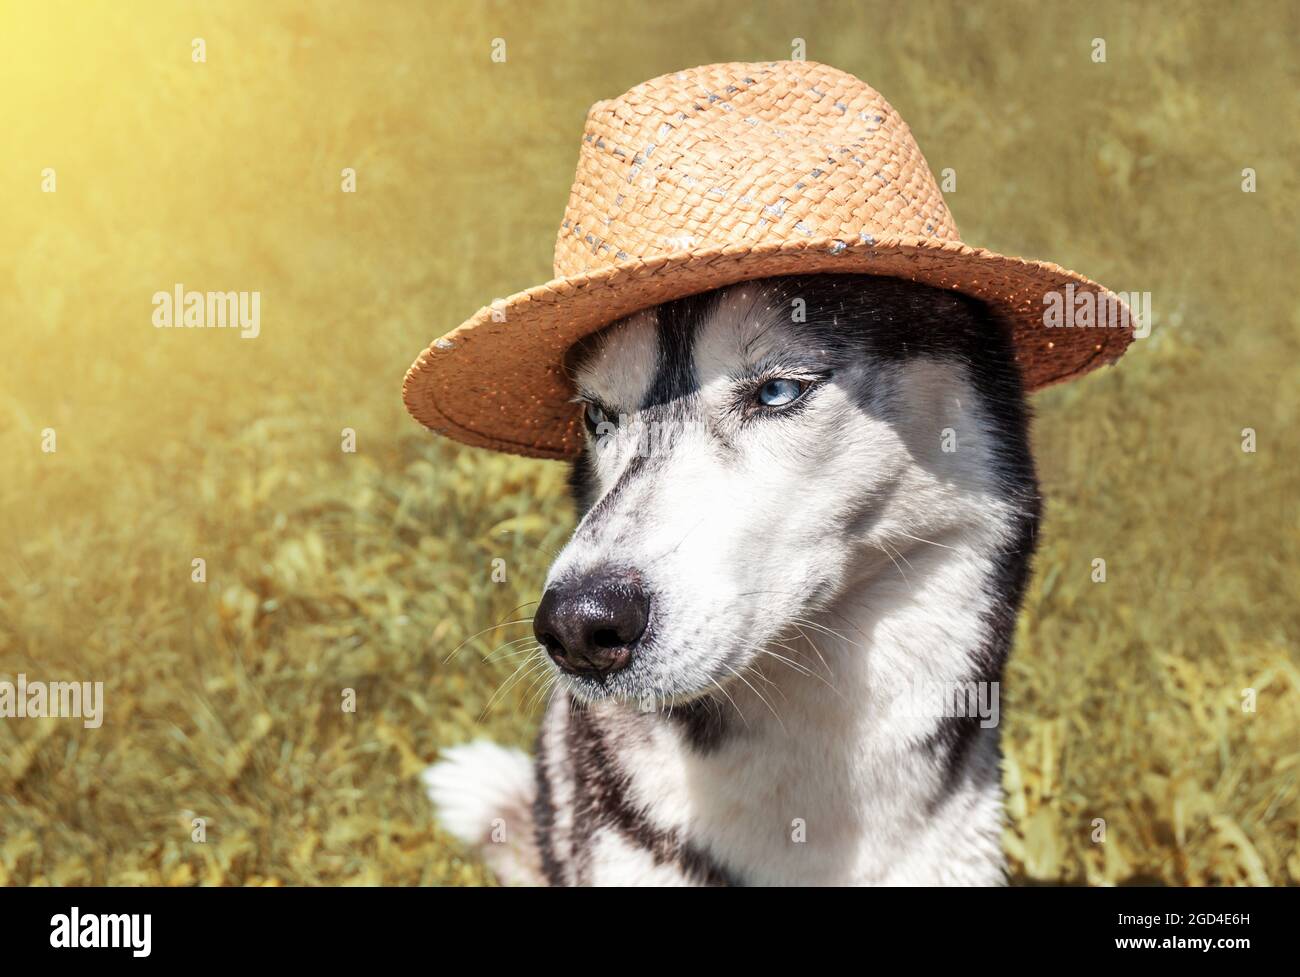 Sibirischer Husky mit blauen Augen in einem Strohhut auf dem Feld. Porträt eines niedlichen jungen Bauernhundes auf dem Land. Erntezeit, Besetzungskonzept Stockfoto